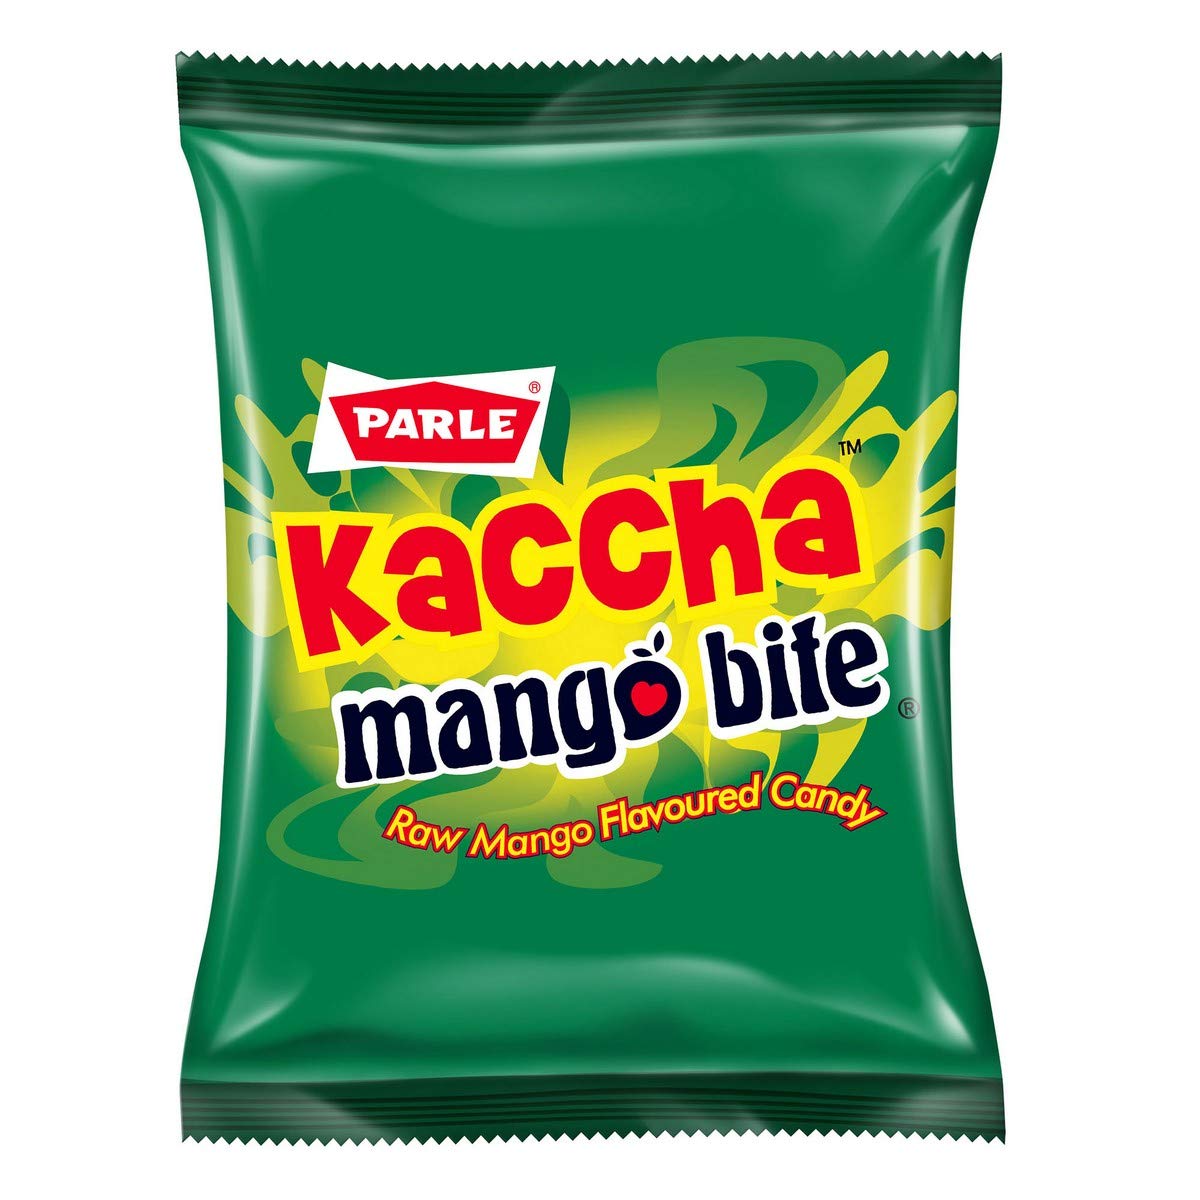 Parle kaccha mango bite pack